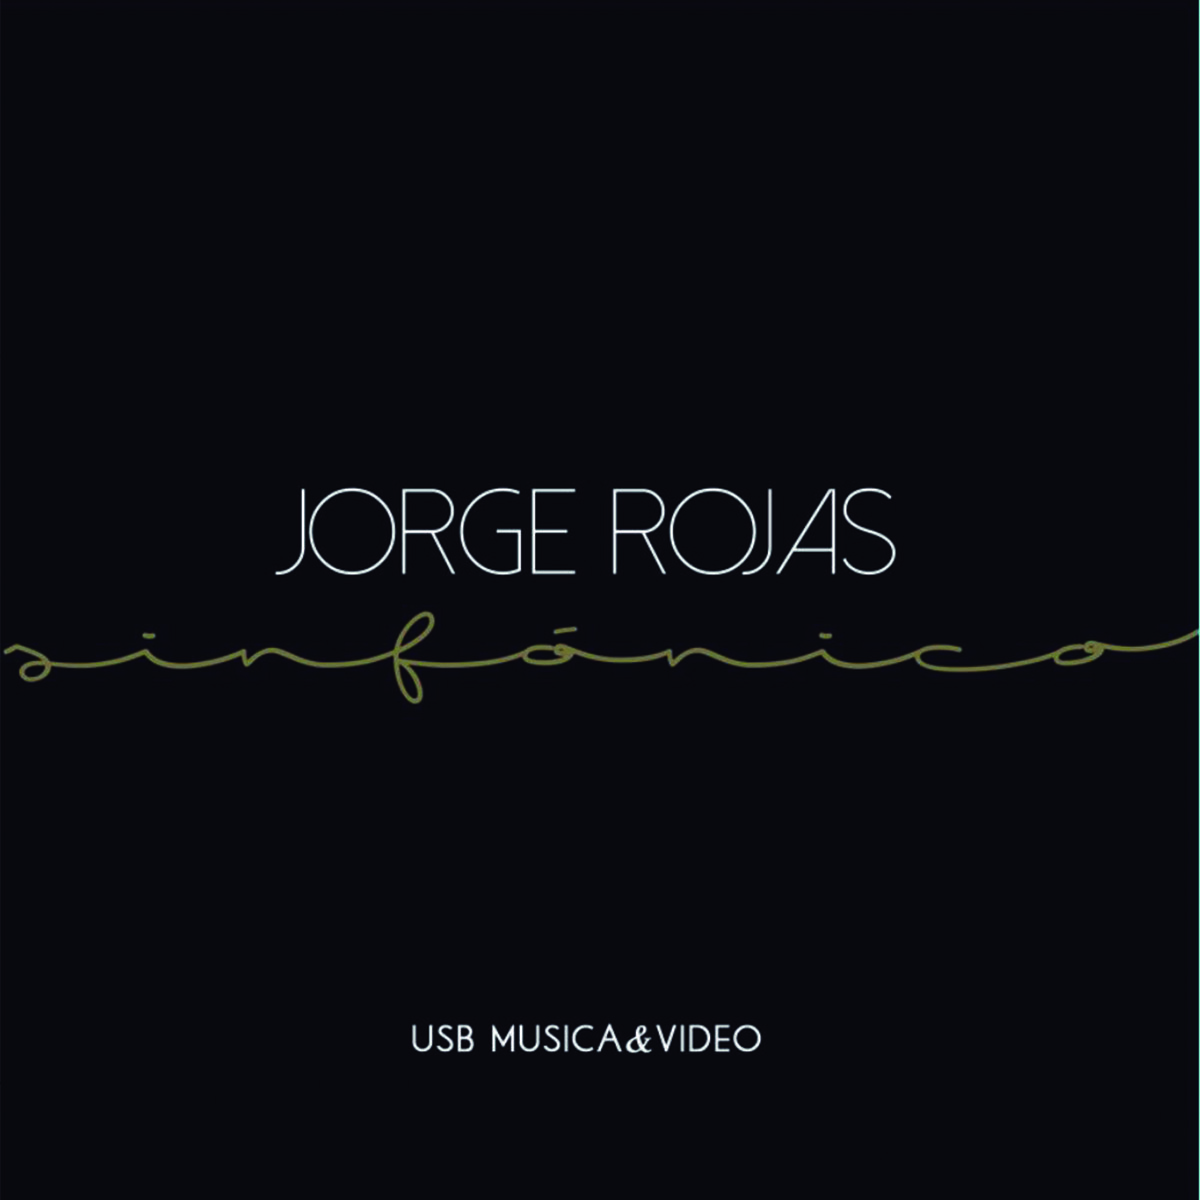 Sinfónico USB Música&Video - Obras Jorge Rosas